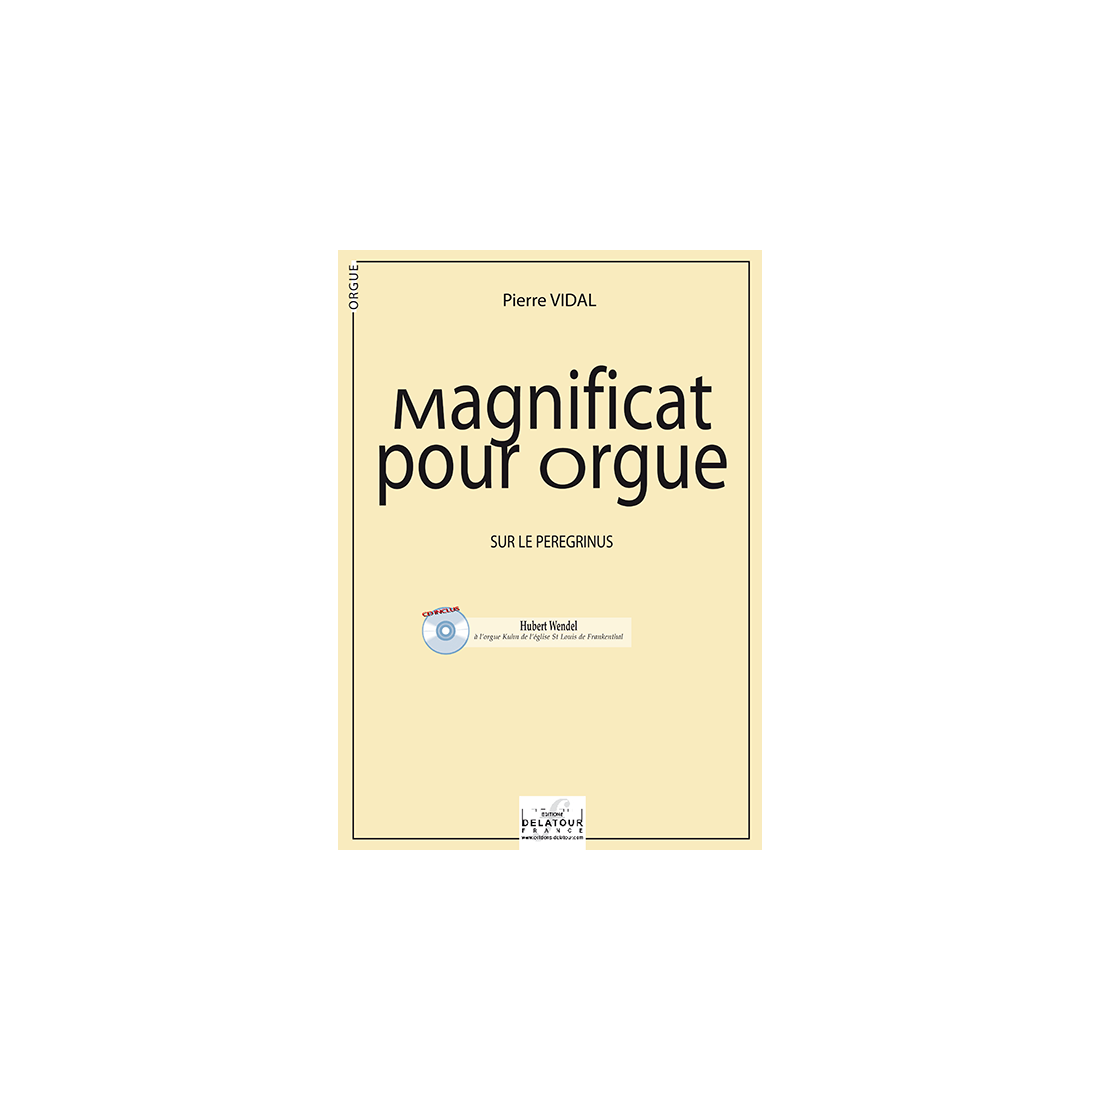 Variationen für Orgel an der Magnificat Peregrinus